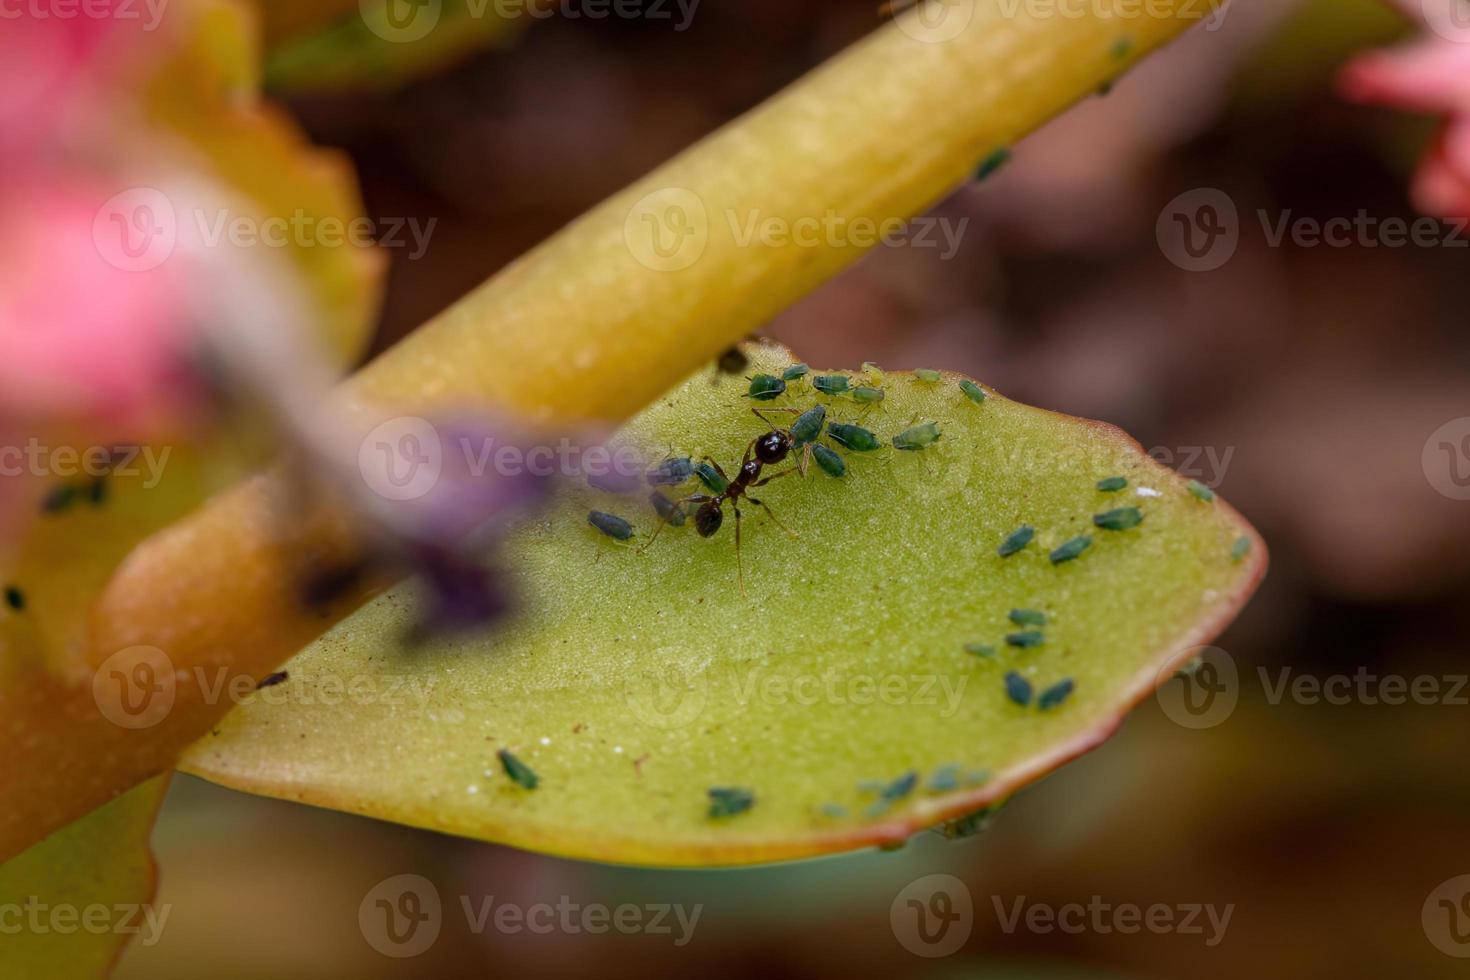 små bladlössinsekter av växten flammande katy foto